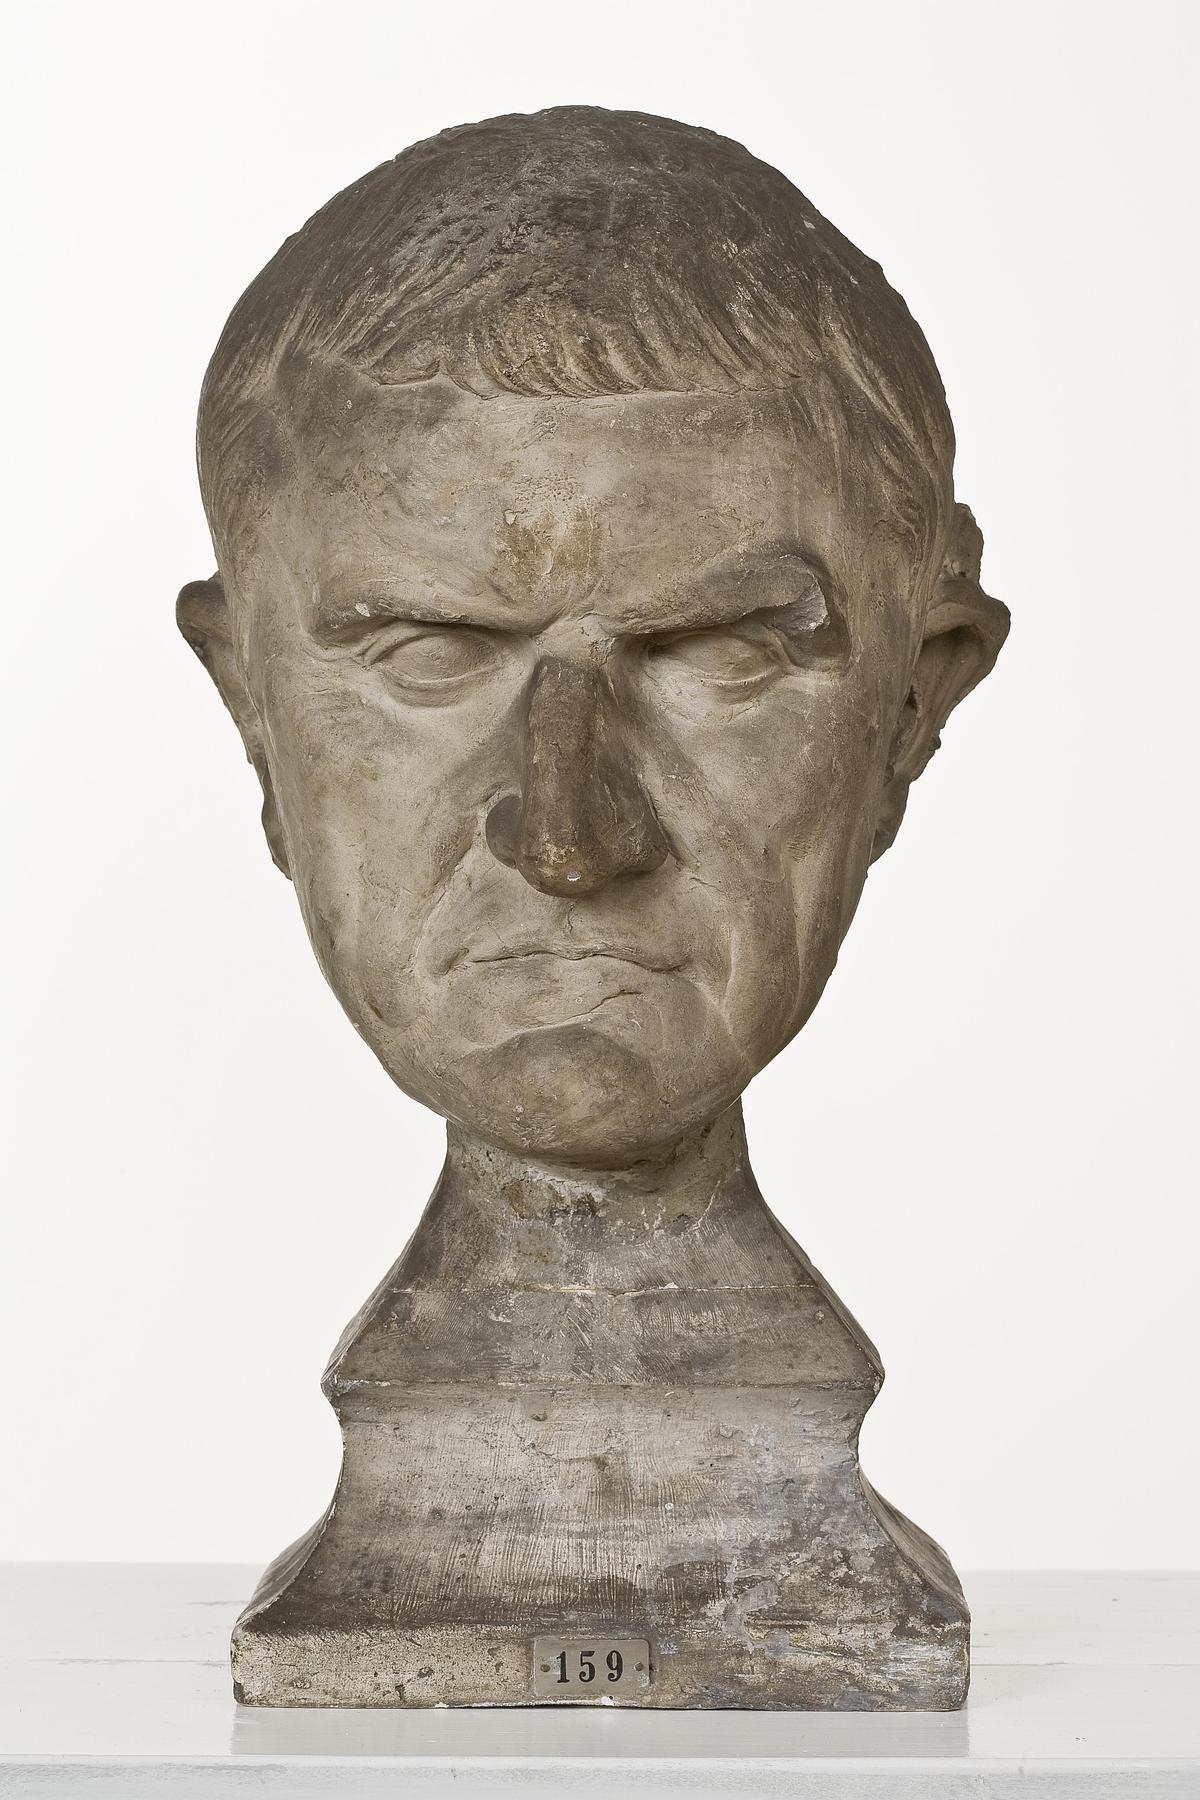 Marcus Licinius Crassus, L159